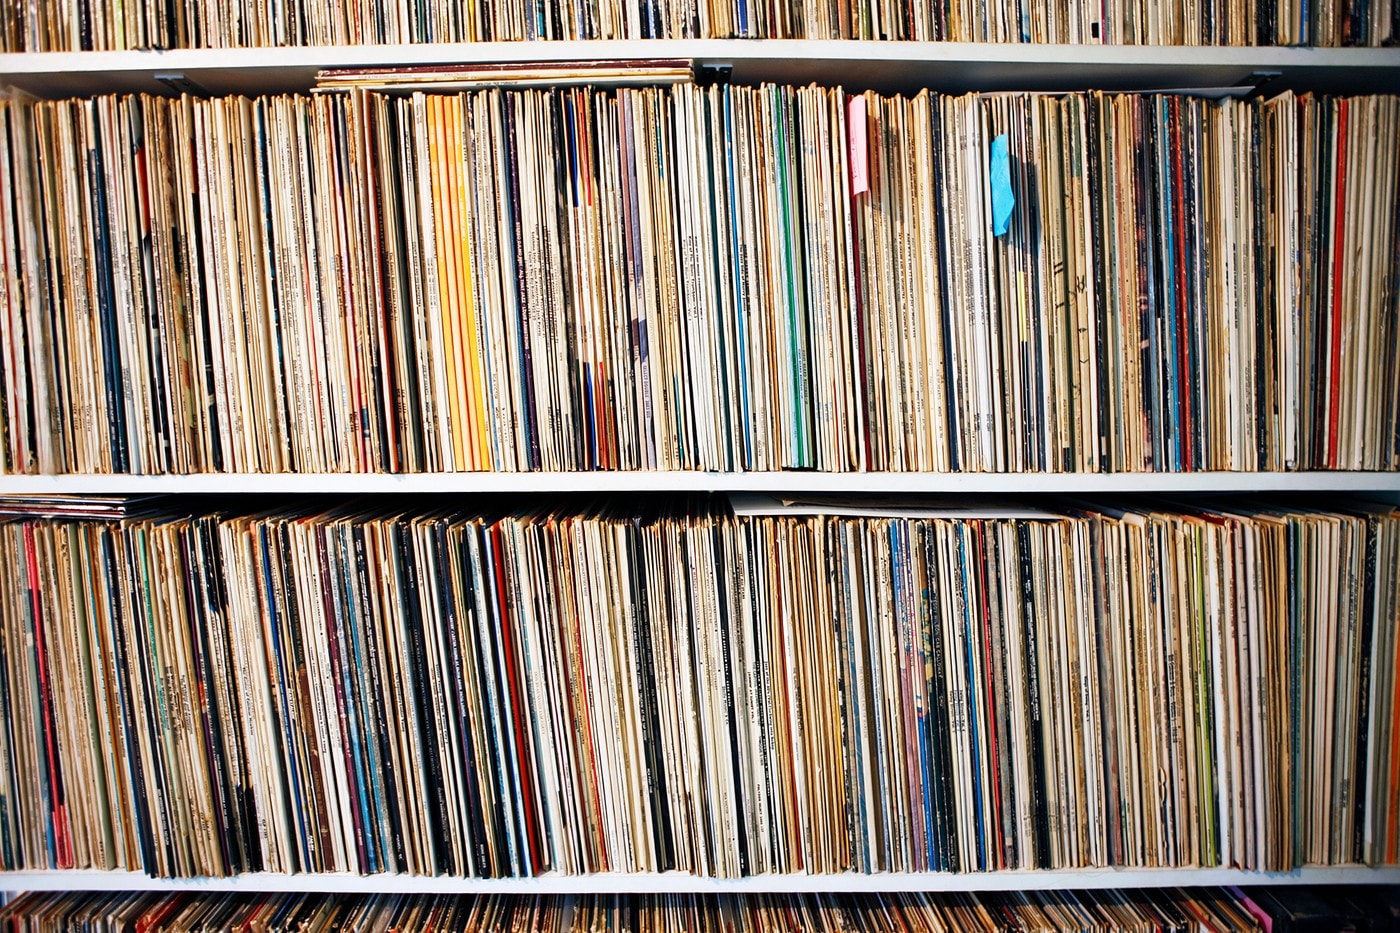 傳統黑膠唱片年度銷量正式超越 CD 光碟銷量